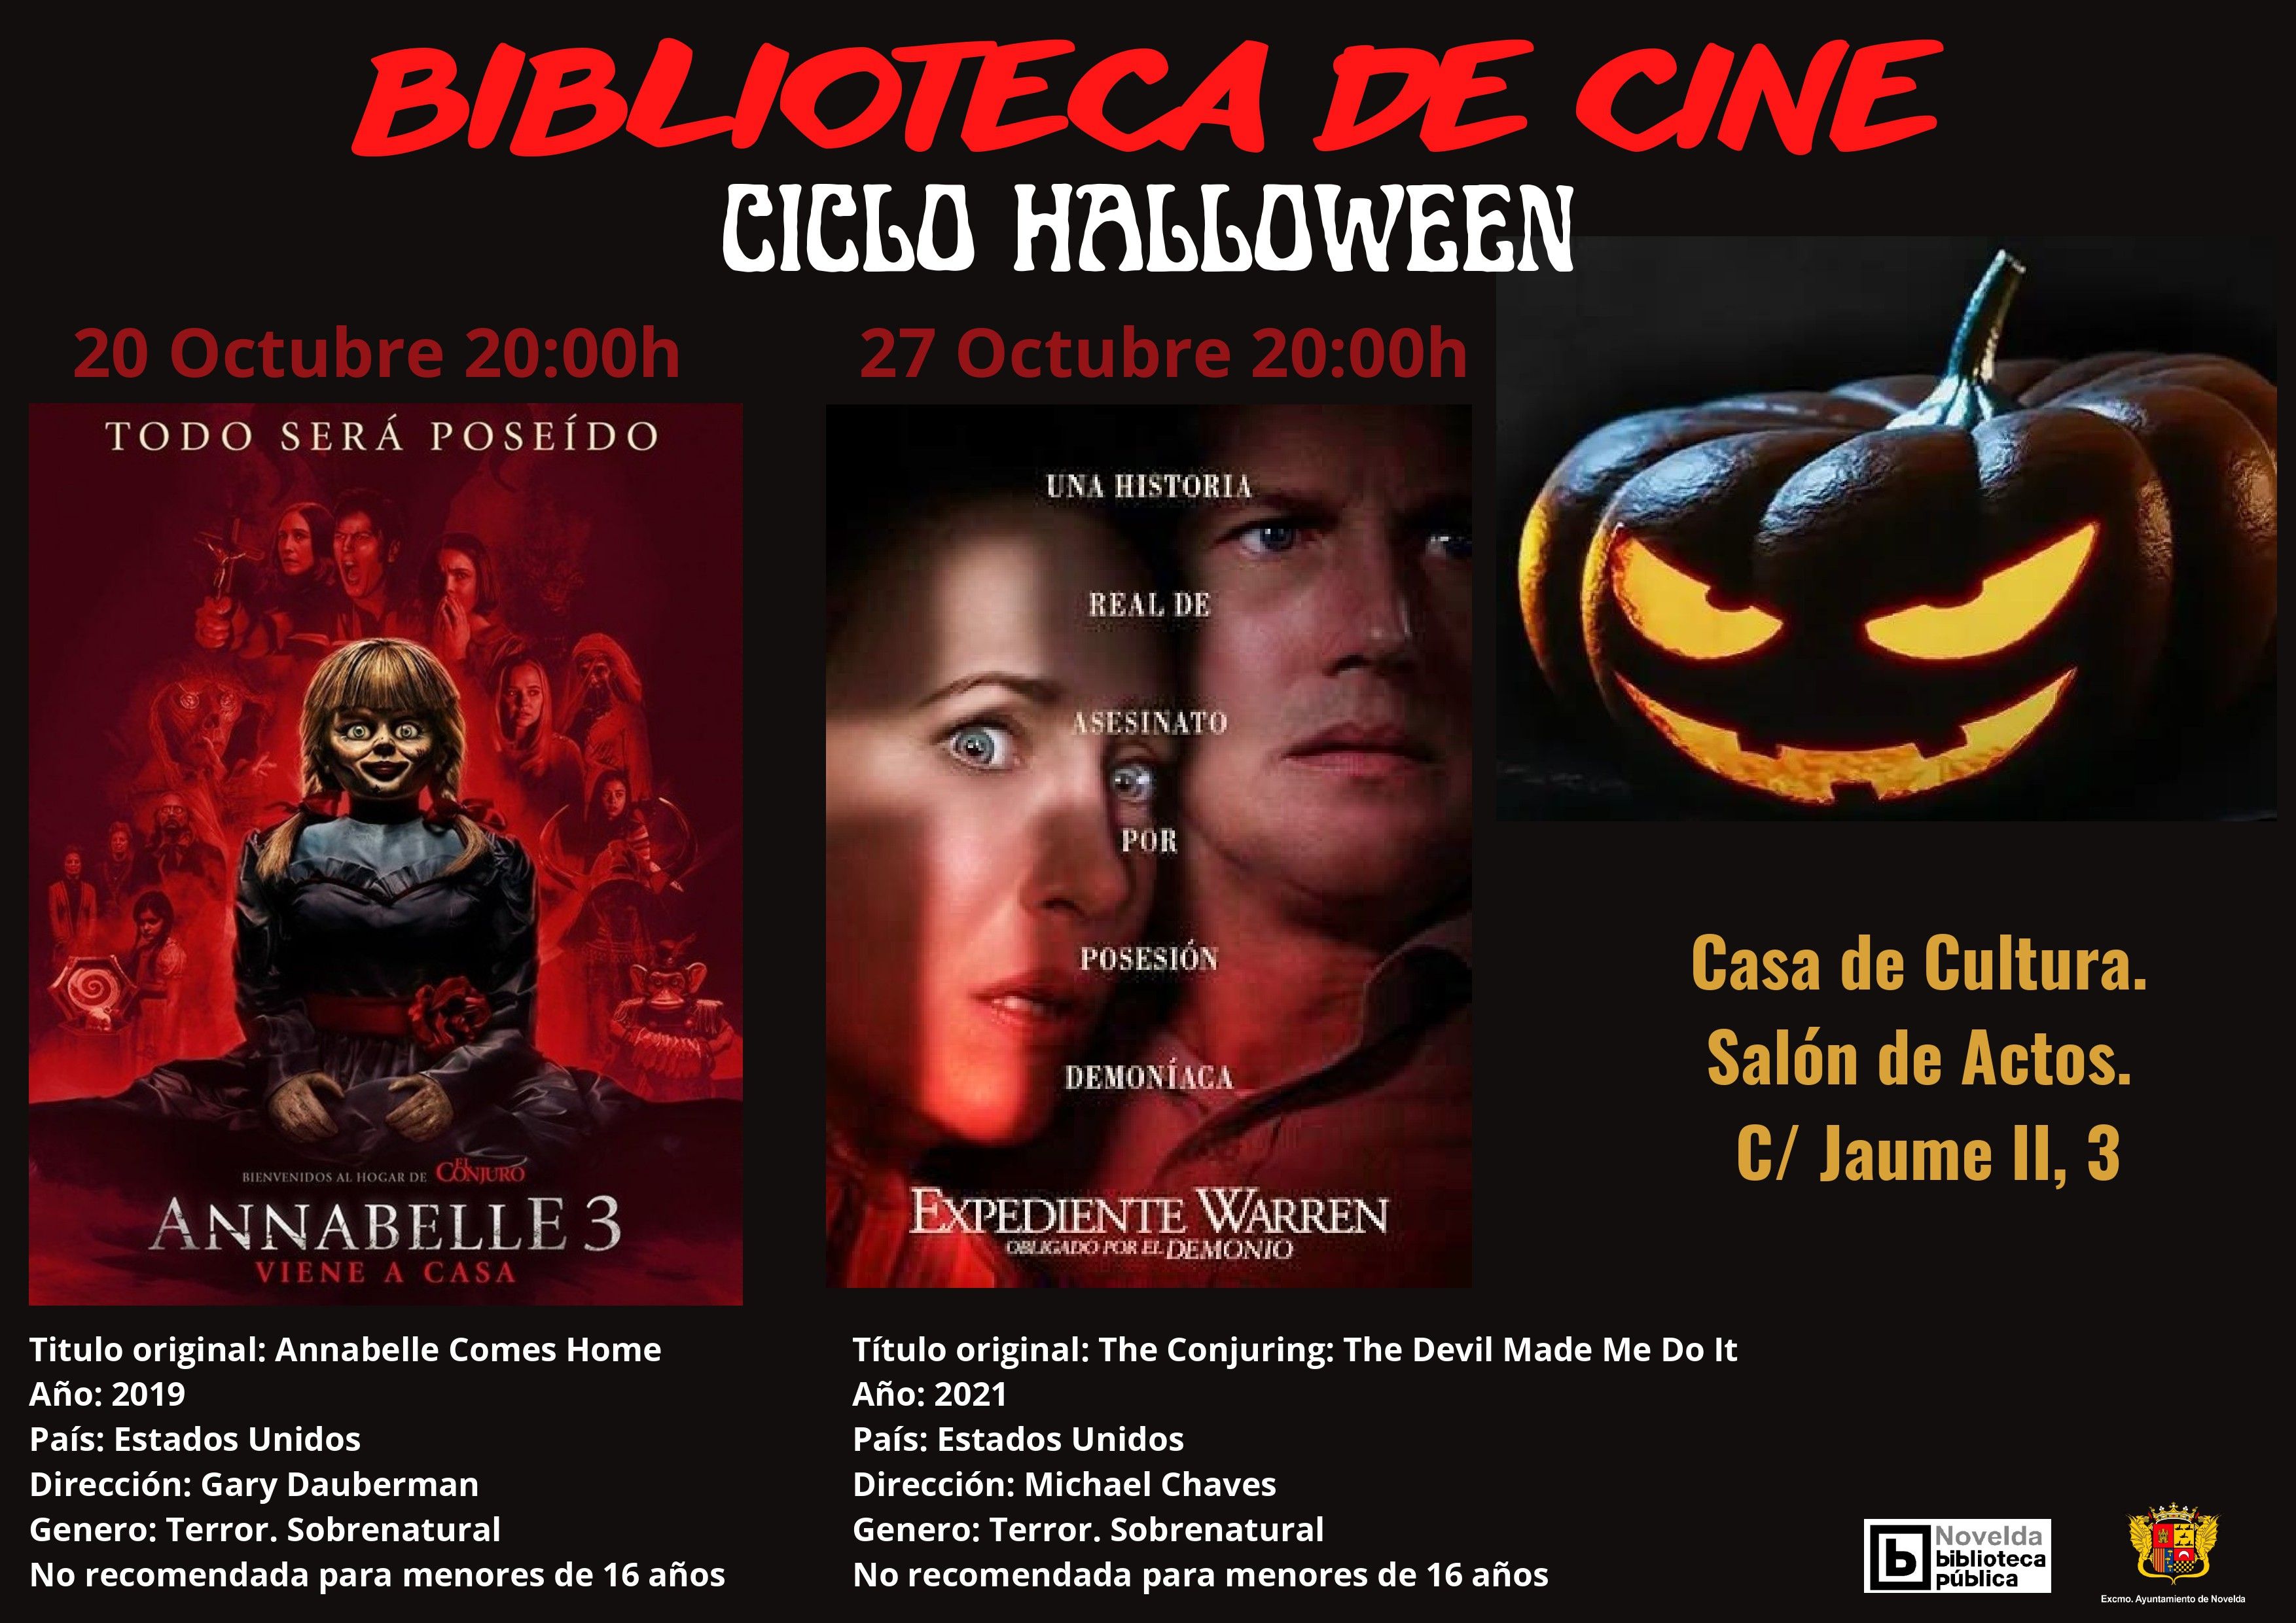 Ayuntamiento de Novelda CARTEL-CICLO-HALLOWEEN EXPEDIENTE WARREN - Ciclo Halloween de la Biblioteca de Cine 